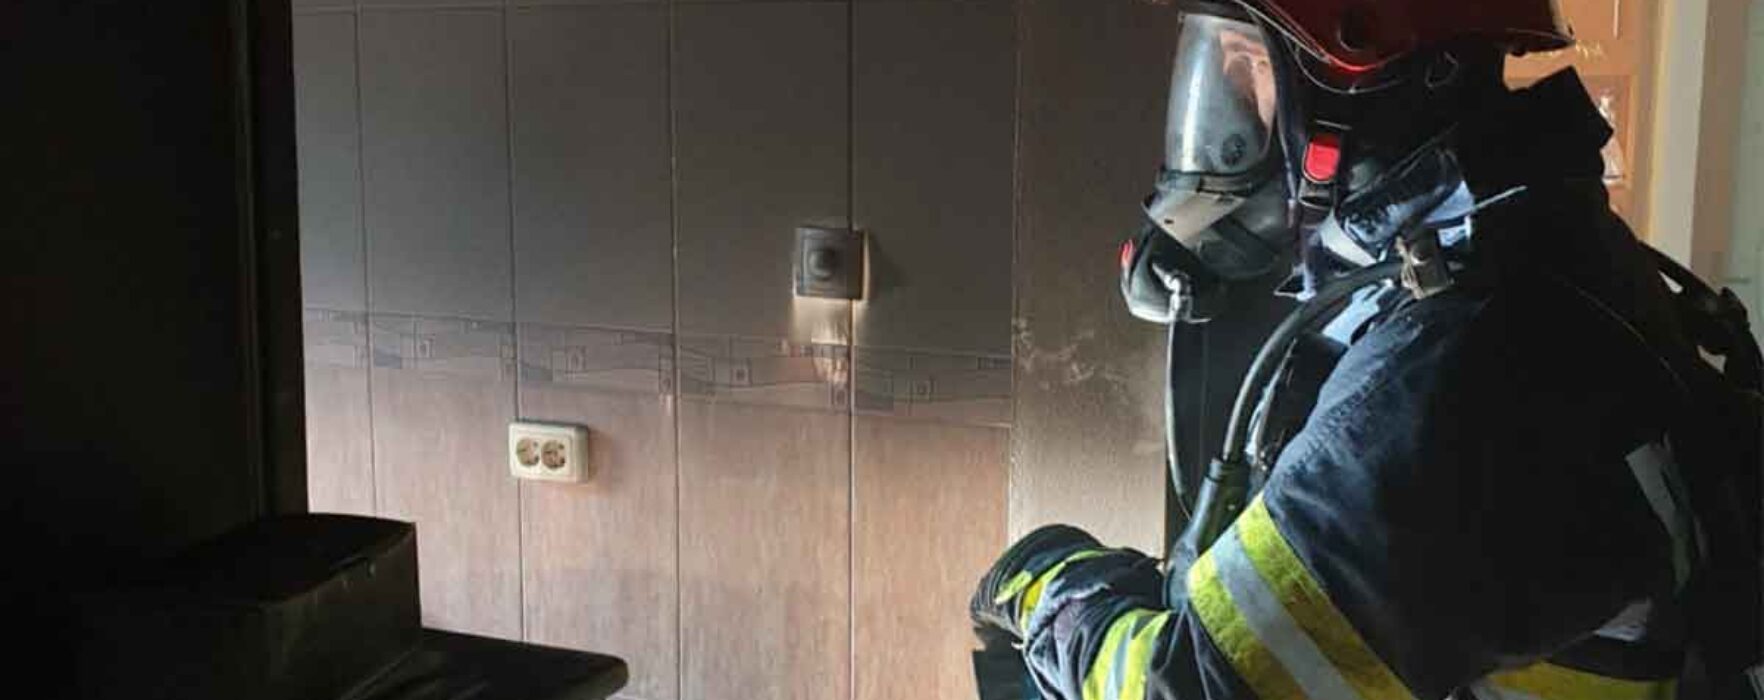 Dâmboviţa: Femeie de 70 de ani găsită carbonizată într-o casă care a luat foc